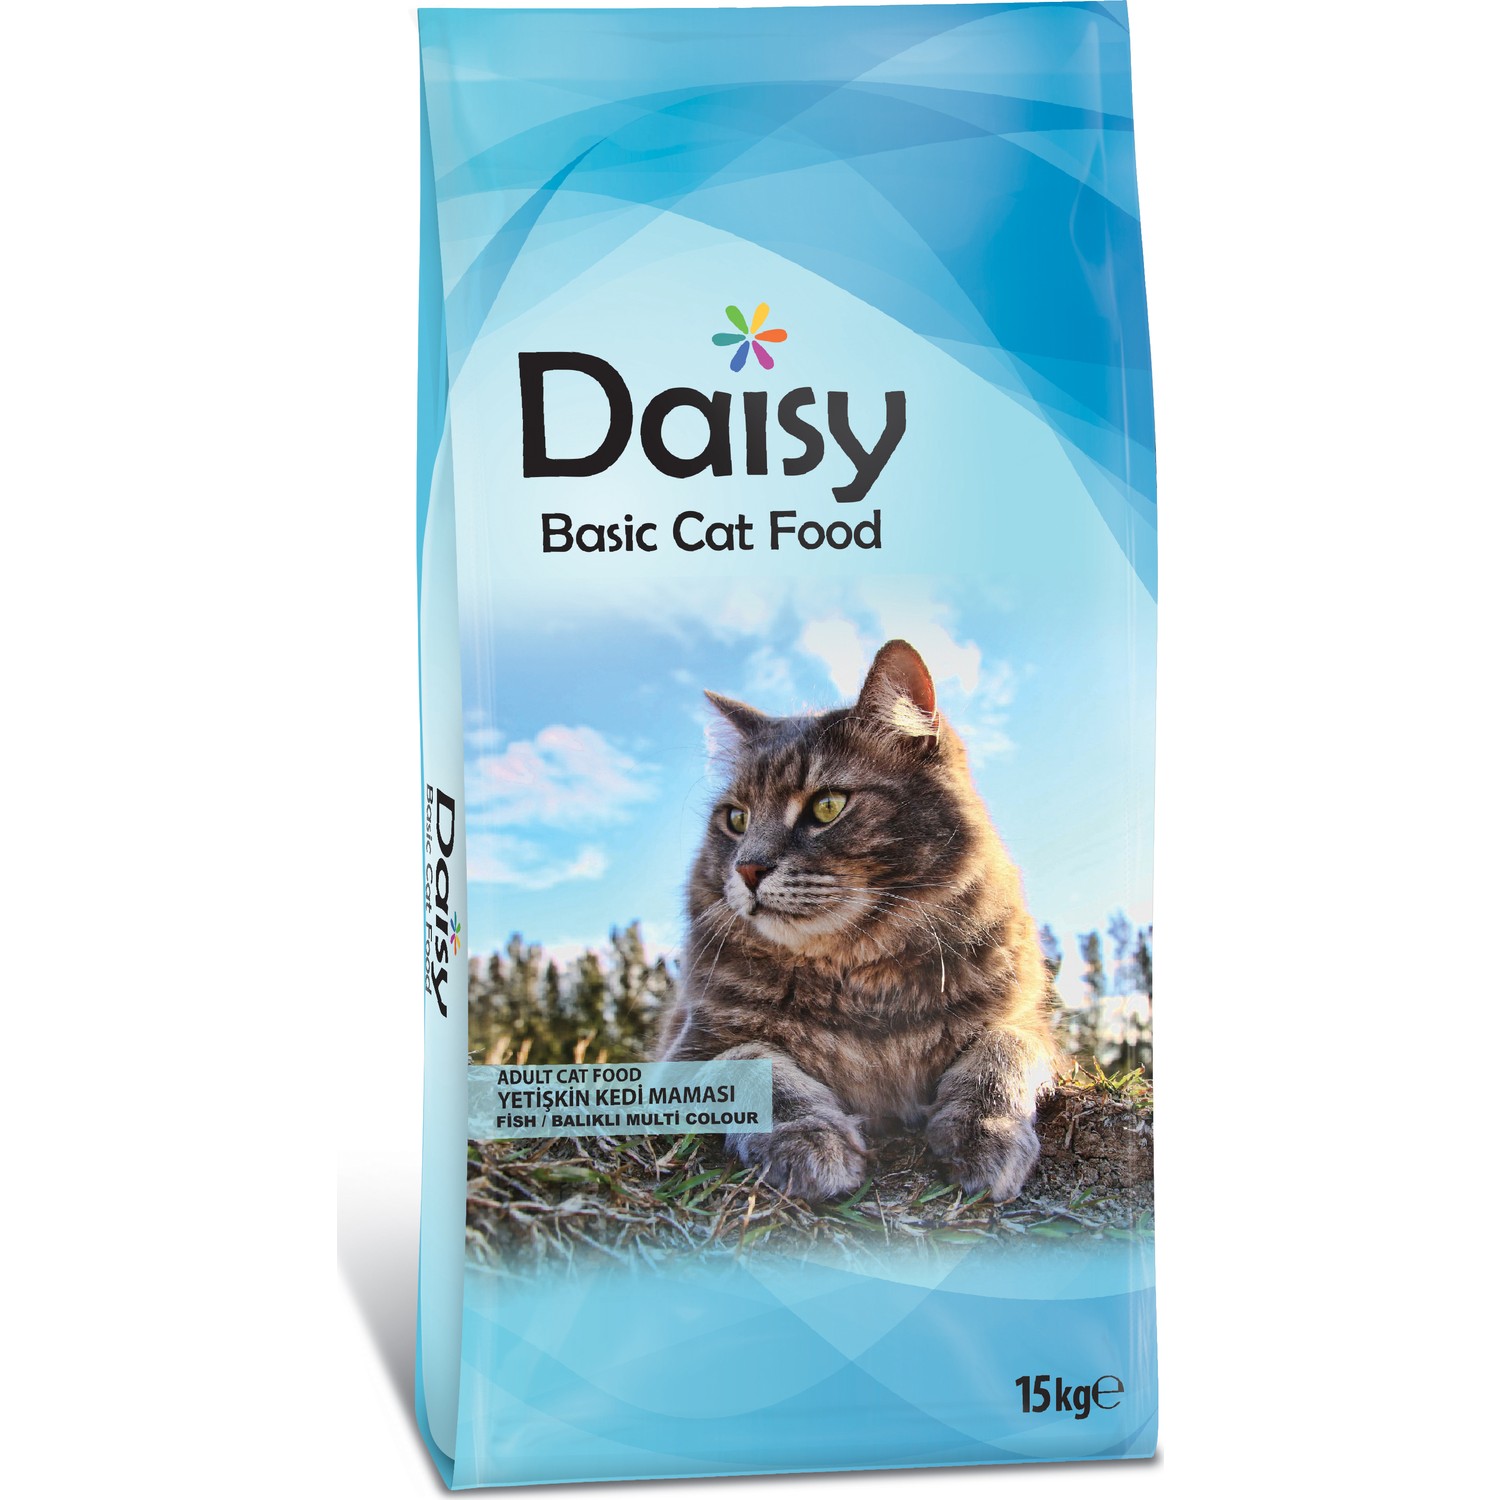 Daisy Basic Balıklı Renkli Taneli Yetişkin Kedi Maması 15 kg Fiyatı